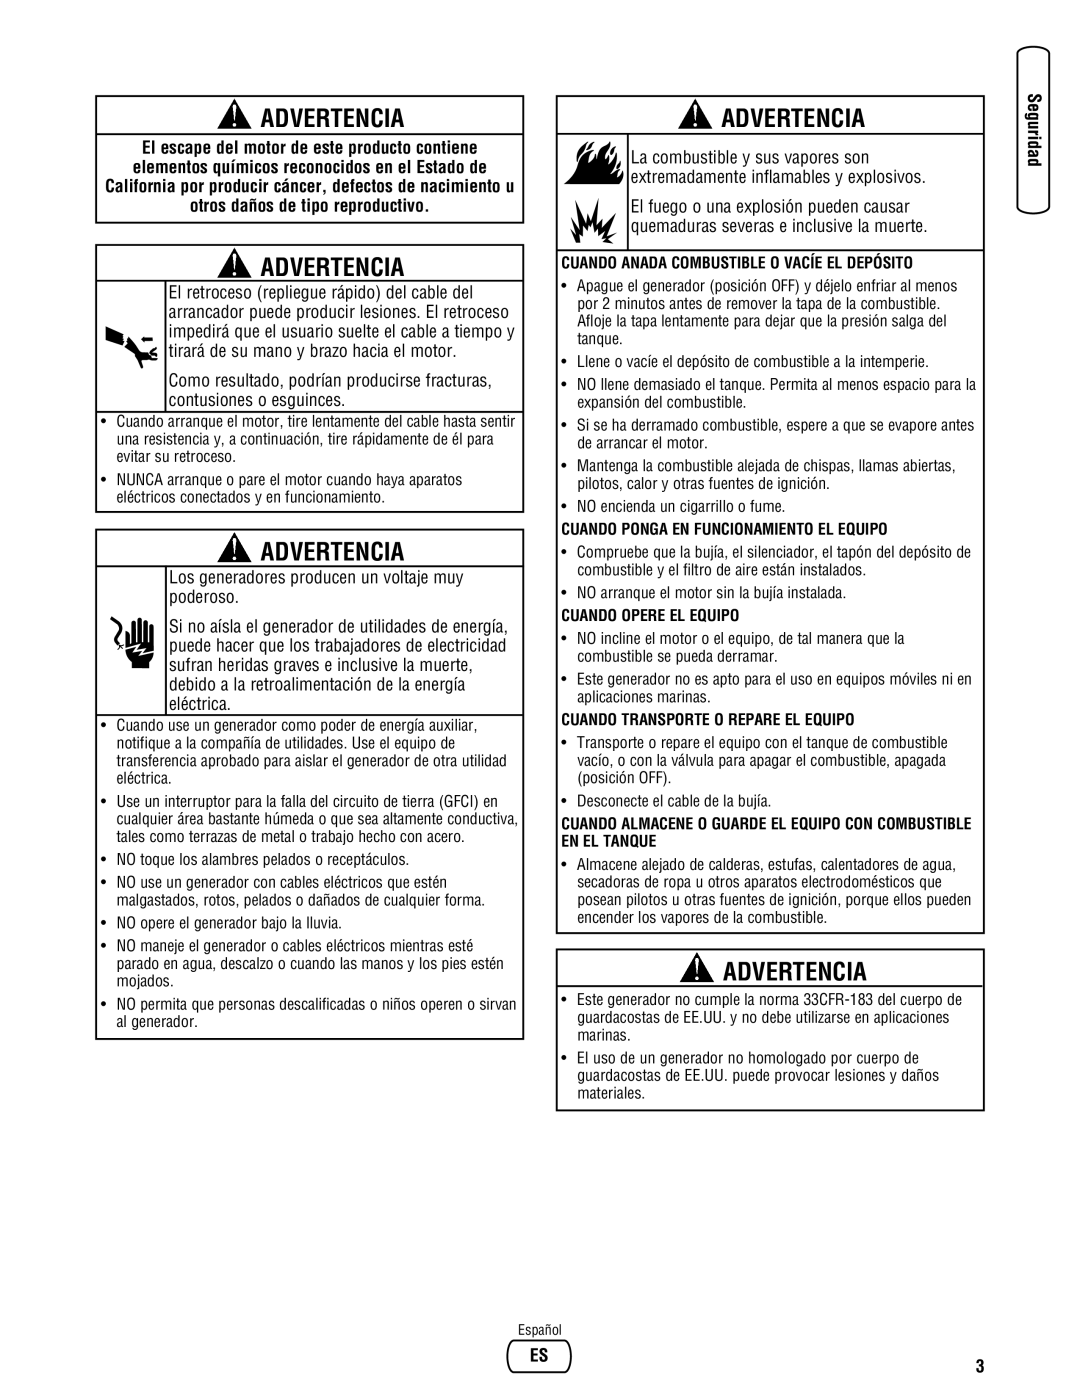 Briggs & Stratton 030248-0 manual Advertencia, Cuando Anada Combustible O Vacíe El Depósito, Cuando Opere El Equipo 